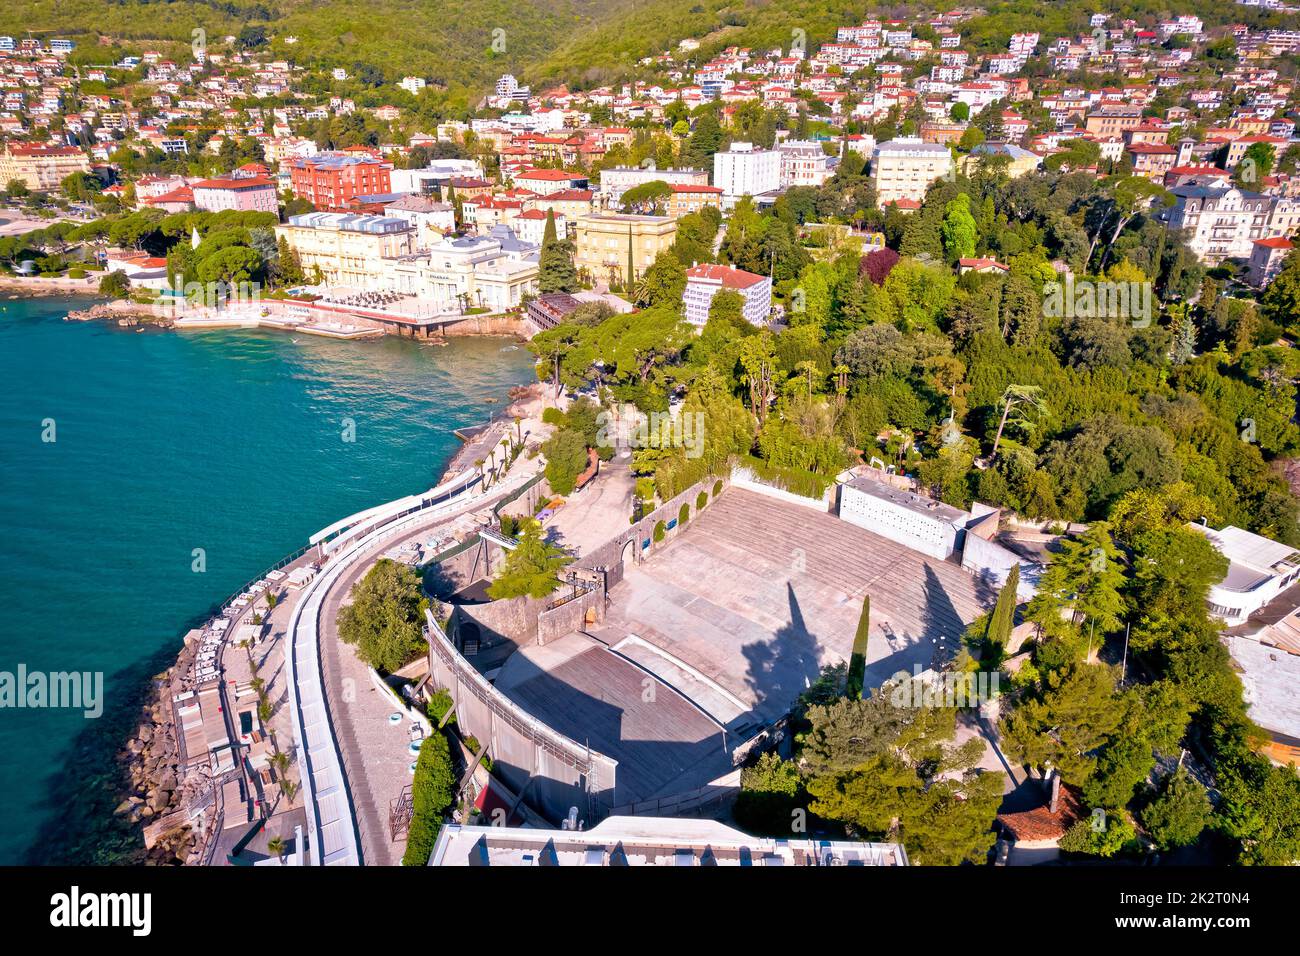 Teatro de verano Opatija y vista aérea de la costa Foto de stock